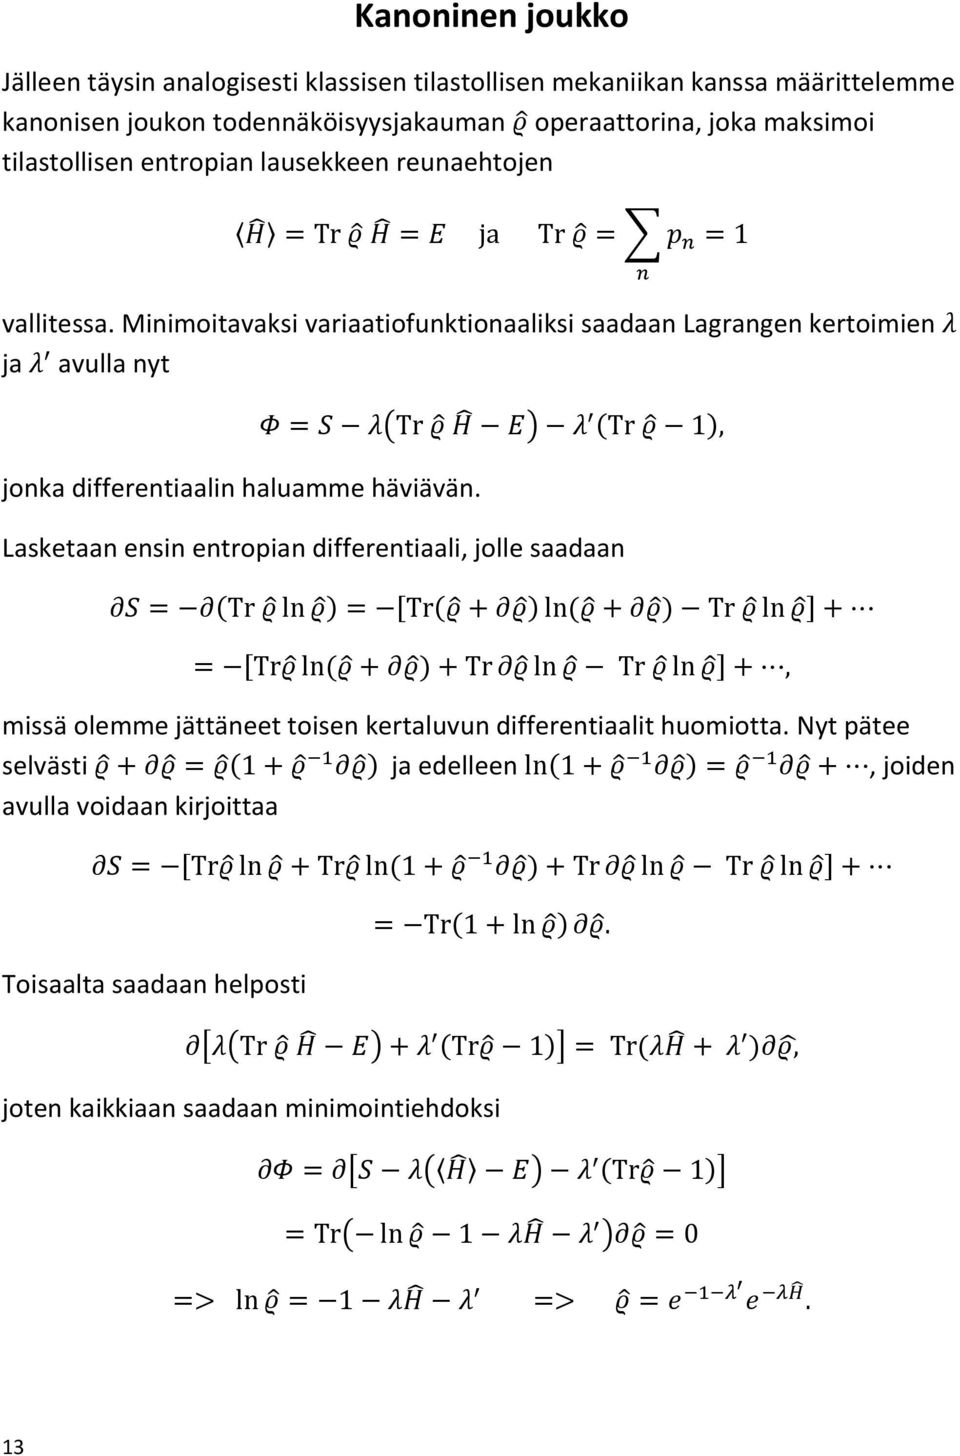 Minimoitavaksi variaatiofunktionaaliksi saadaan Lagrangen kertoimien ja avulla nyt jonka differentiaalin haluamme häviävän.